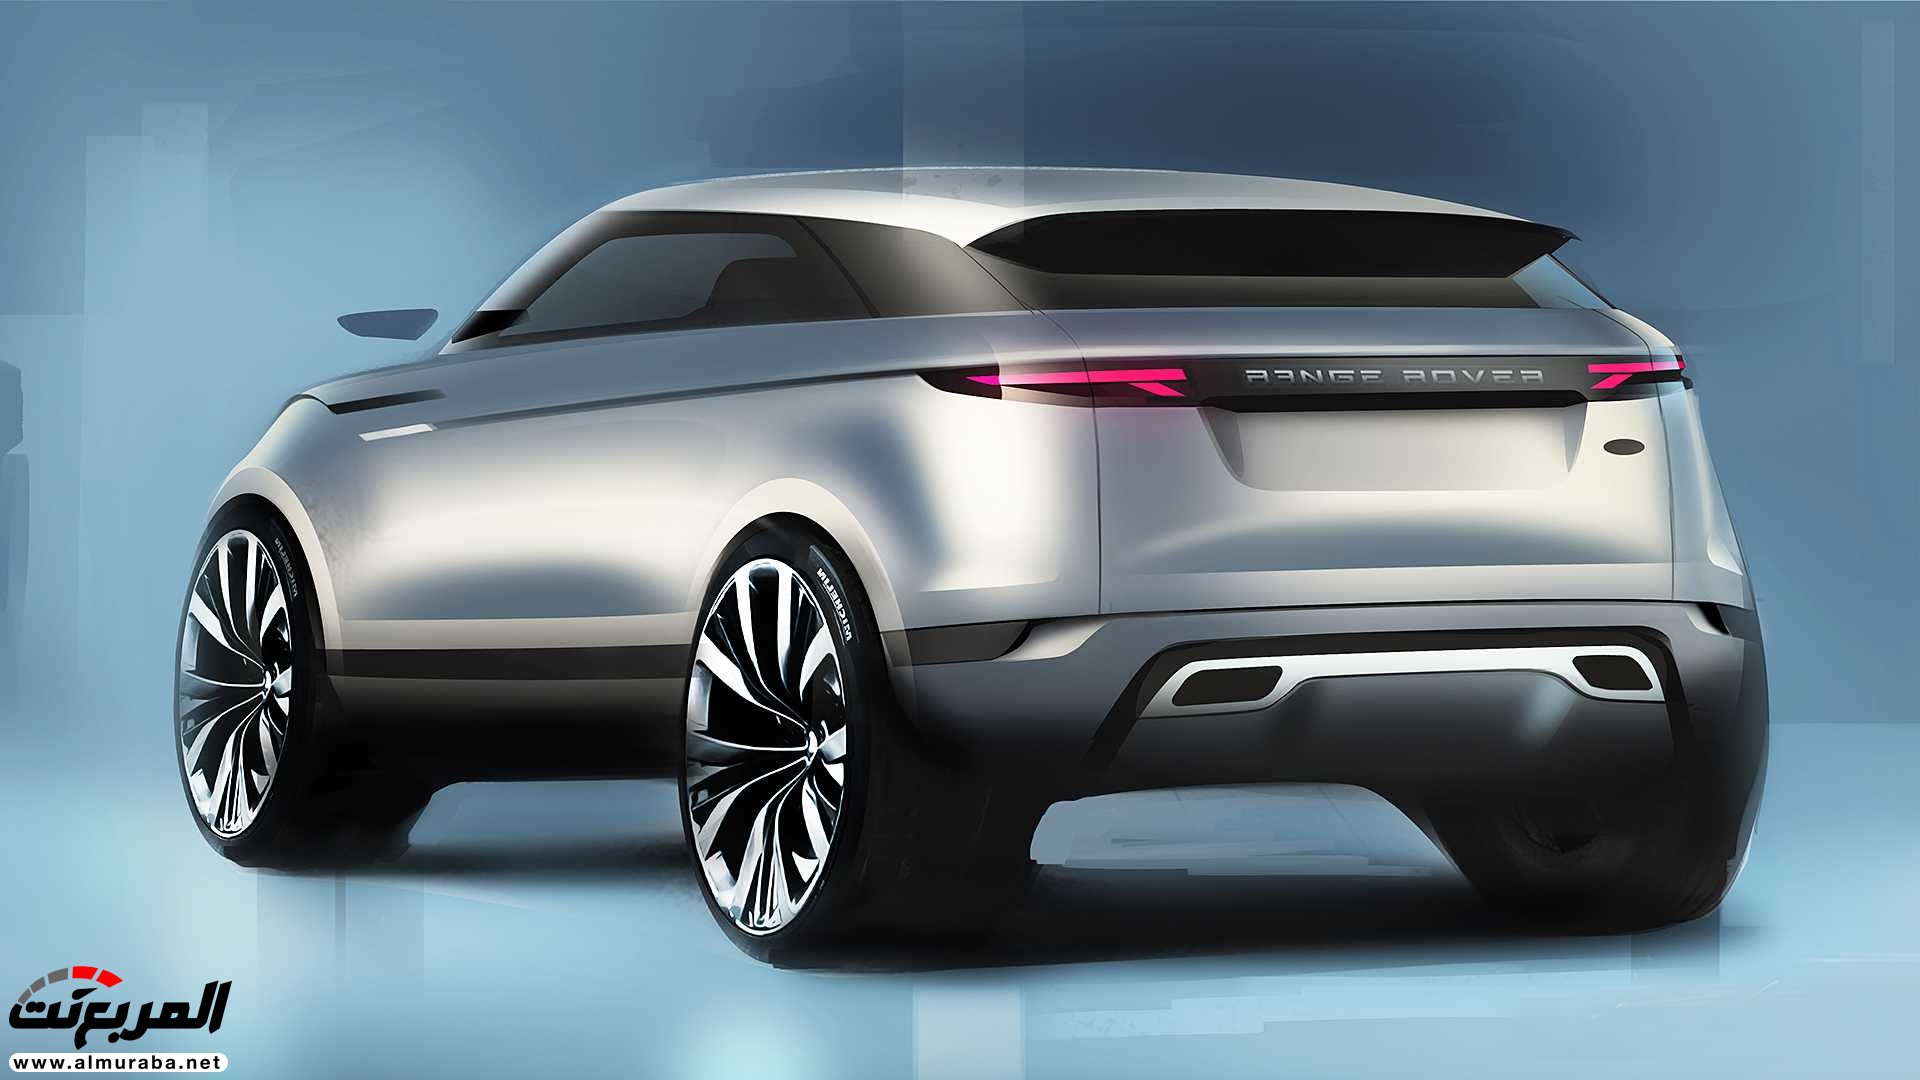 اهم 7 معلومات عن رنج روفر ايفوك 2020 الجديدة كلياً Range Rover Evoque 87